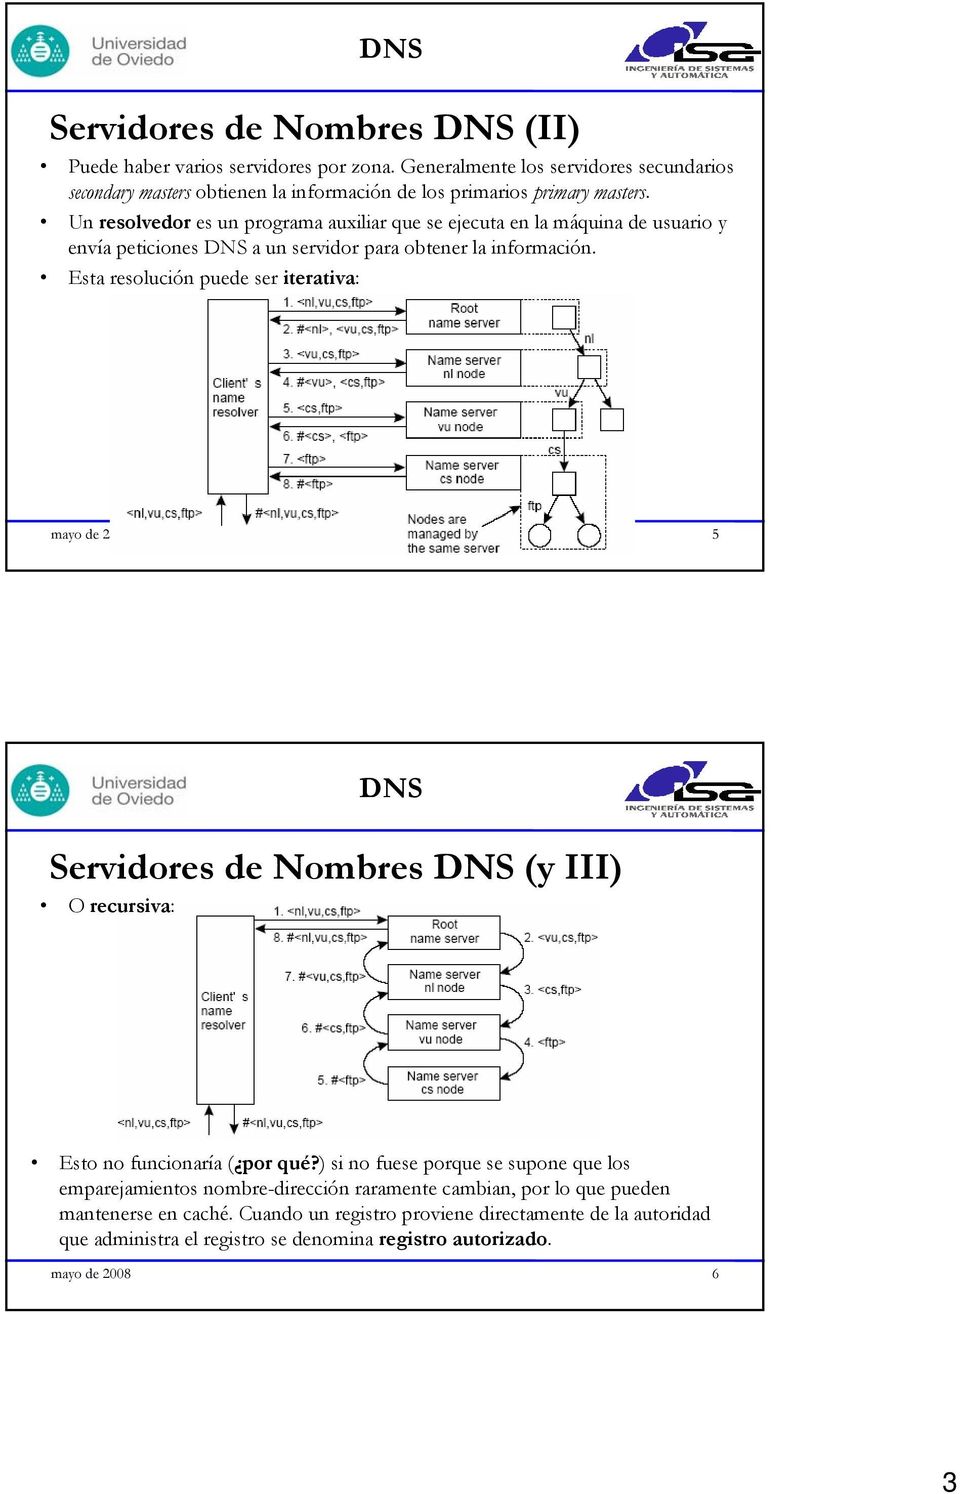 Un resolvedor es un programa auxiliar que se ejecuta en la máquina de usuario y envía peticiones DNS a un servidor para obtener la información.